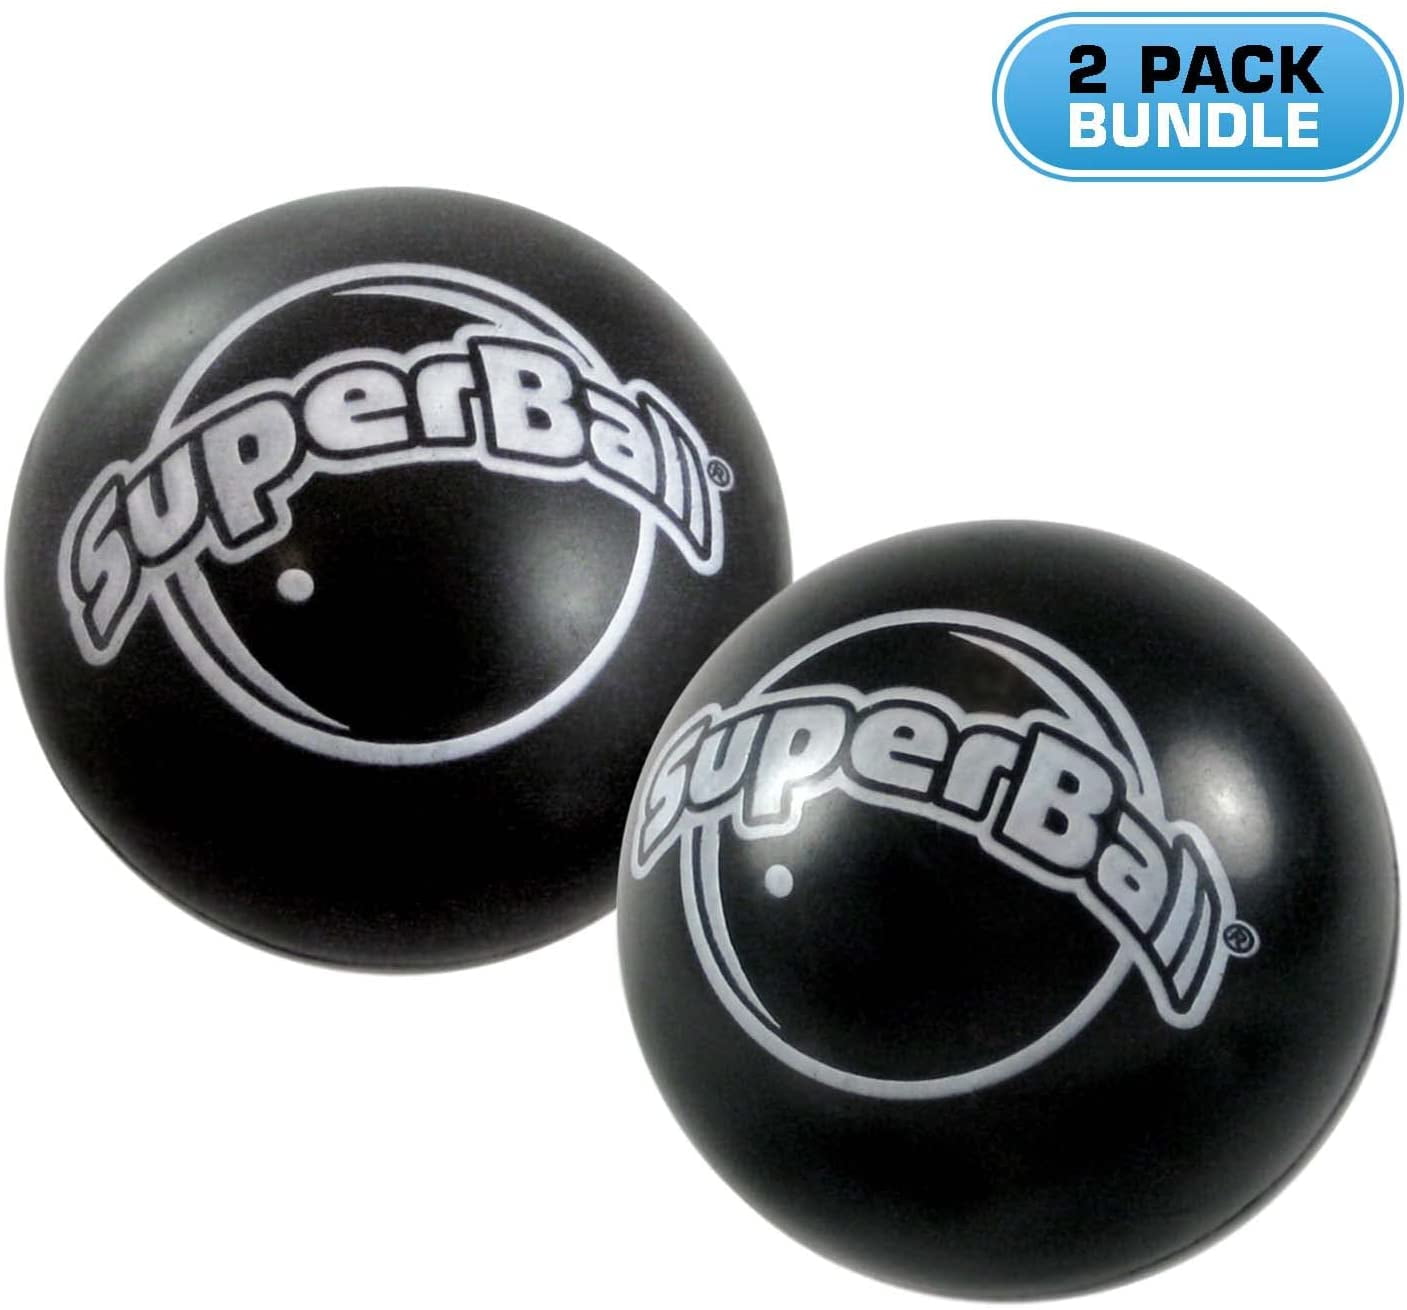 Black super balls